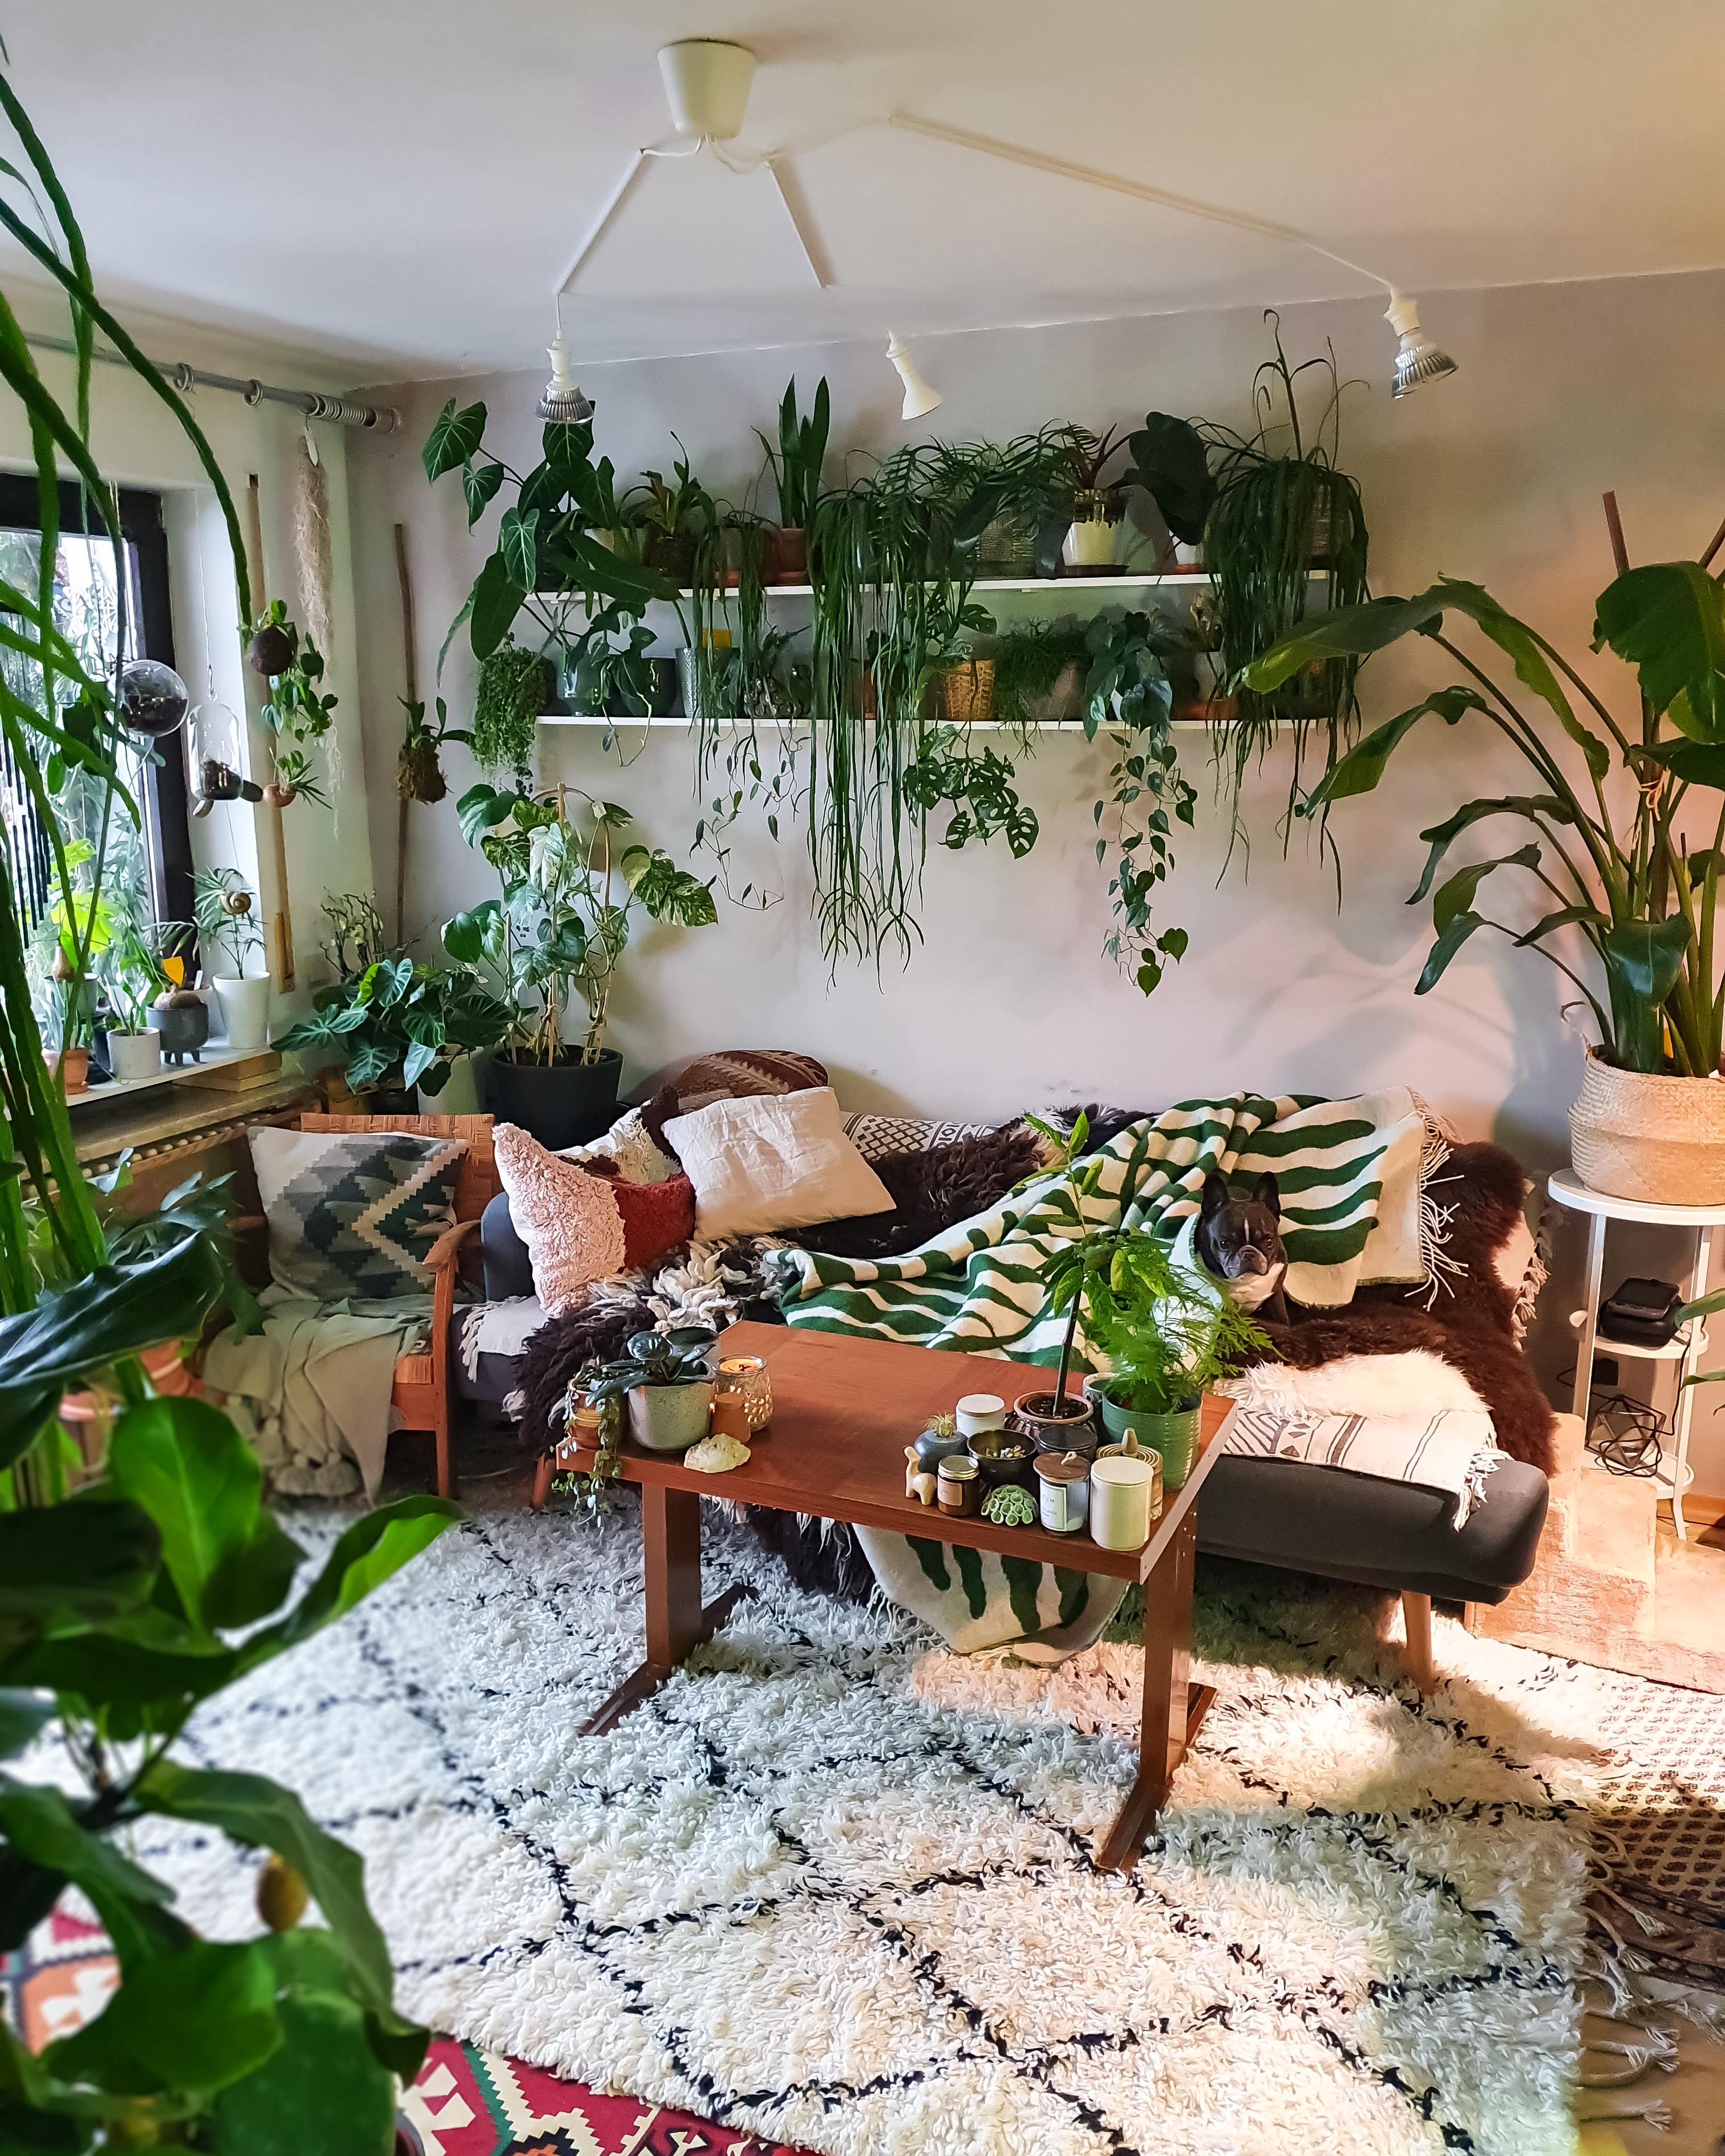 Vizefreitag #wohnzimmer #couchstyle #pflanzen #boho #hippie